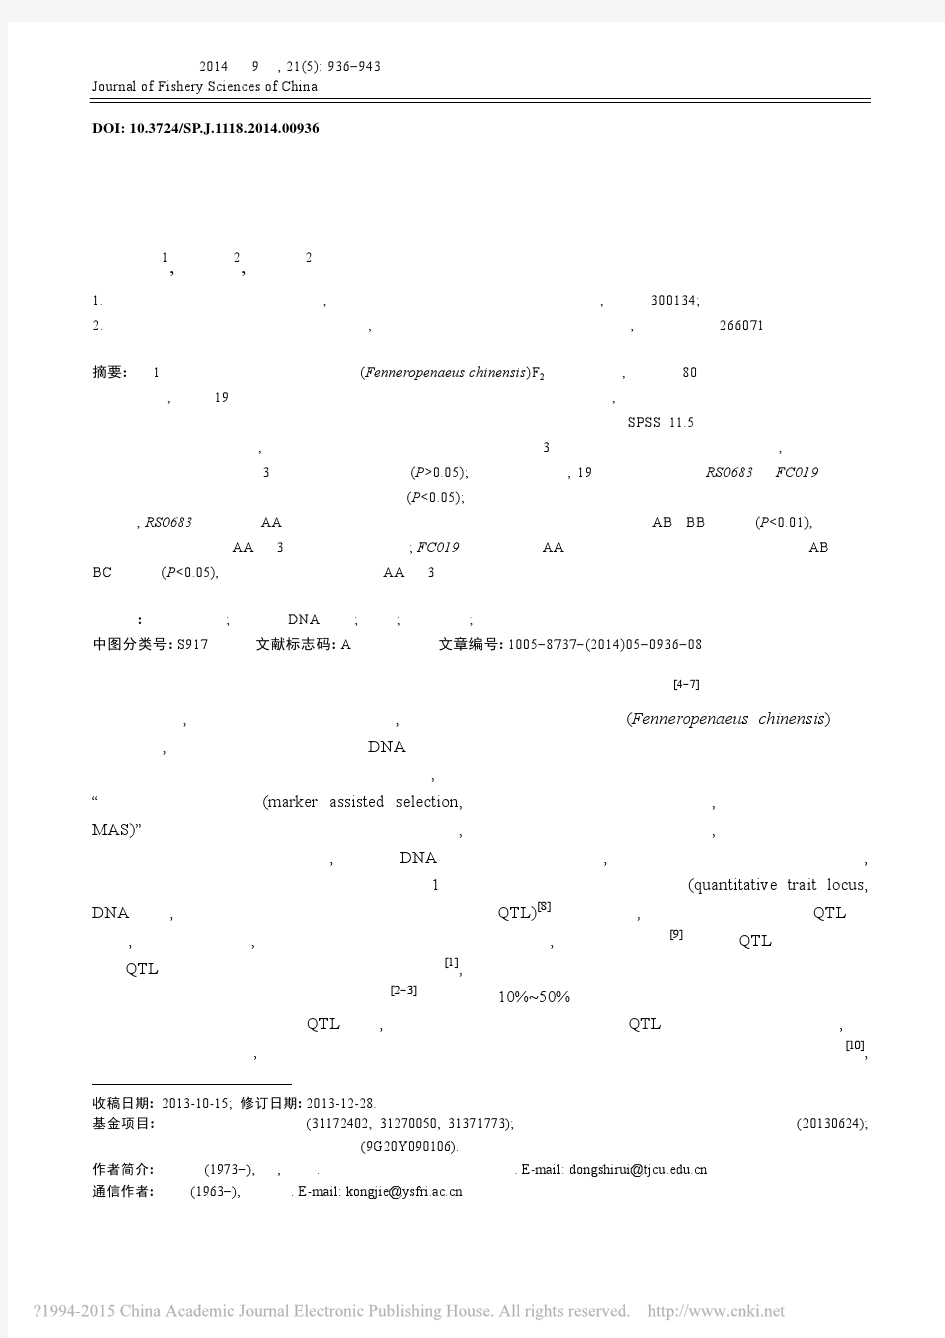 中国明对虾单个家系中与生长性状相关微卫星标记的初步筛选_董世瑞